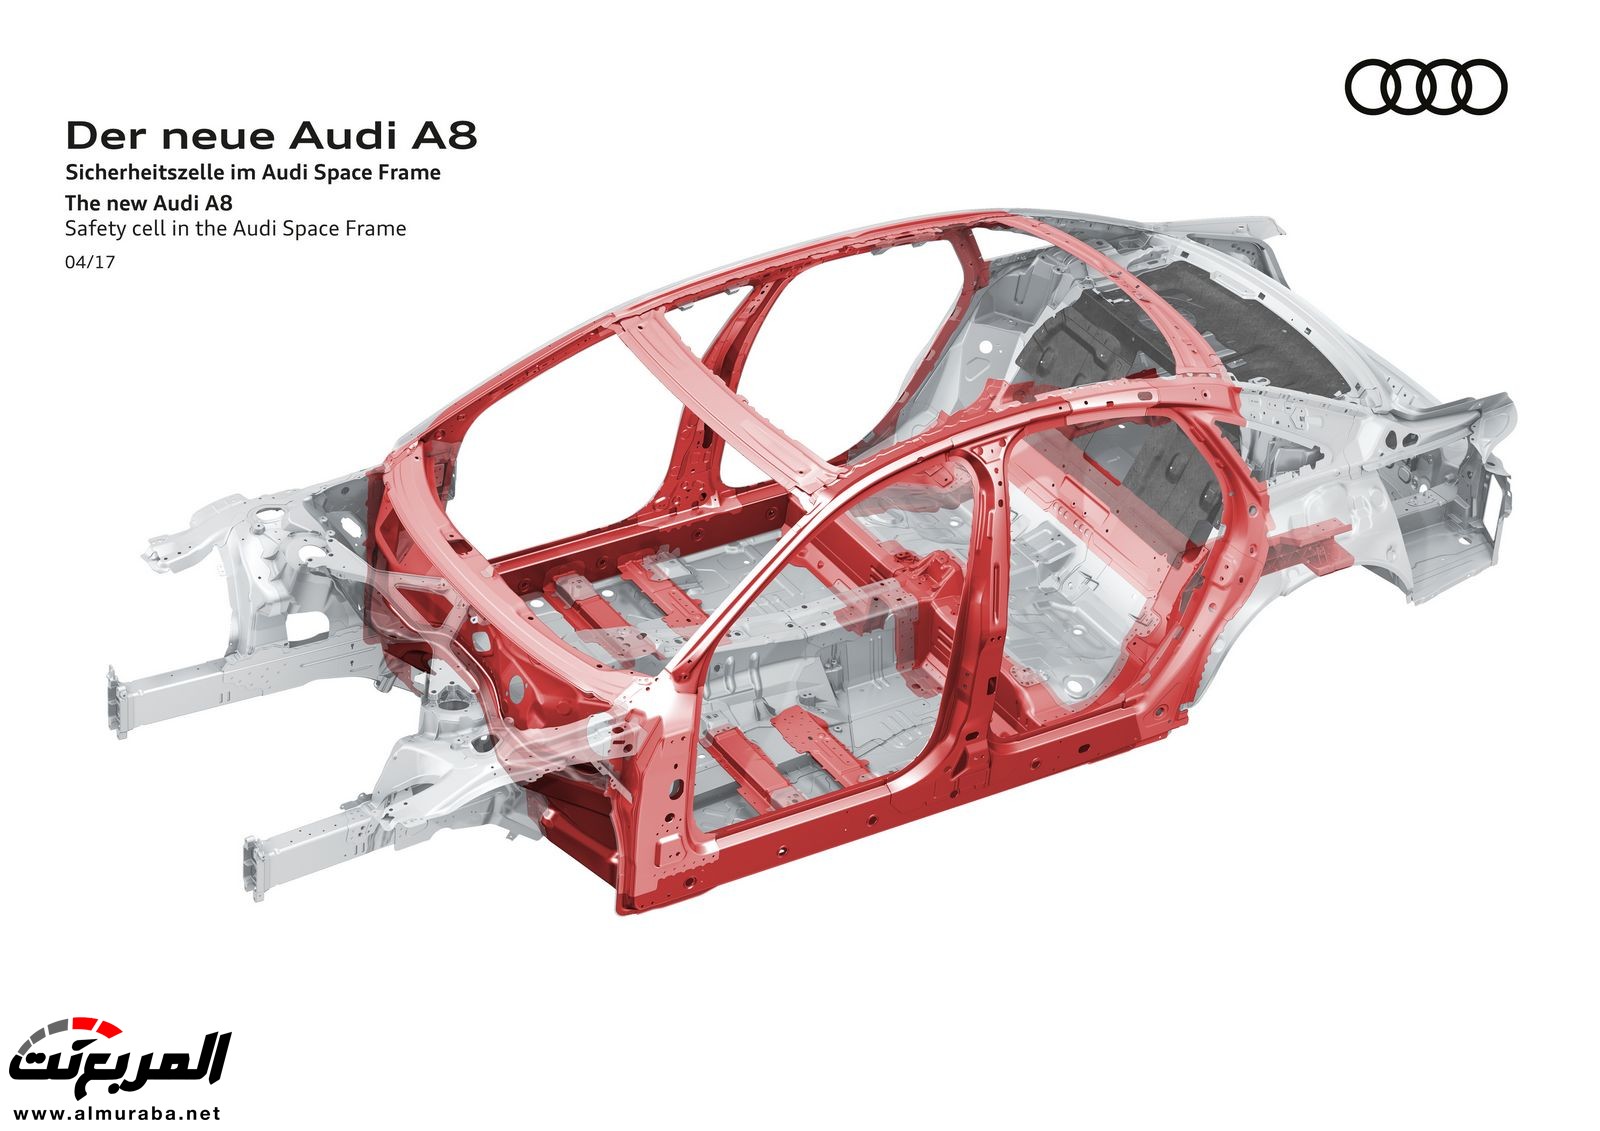 أودي A8 2018 الجديدة كلياً تكشف نفسها بتصميم وتقنيات متطورة "معلومات + 100 صورة" Audi A8 49